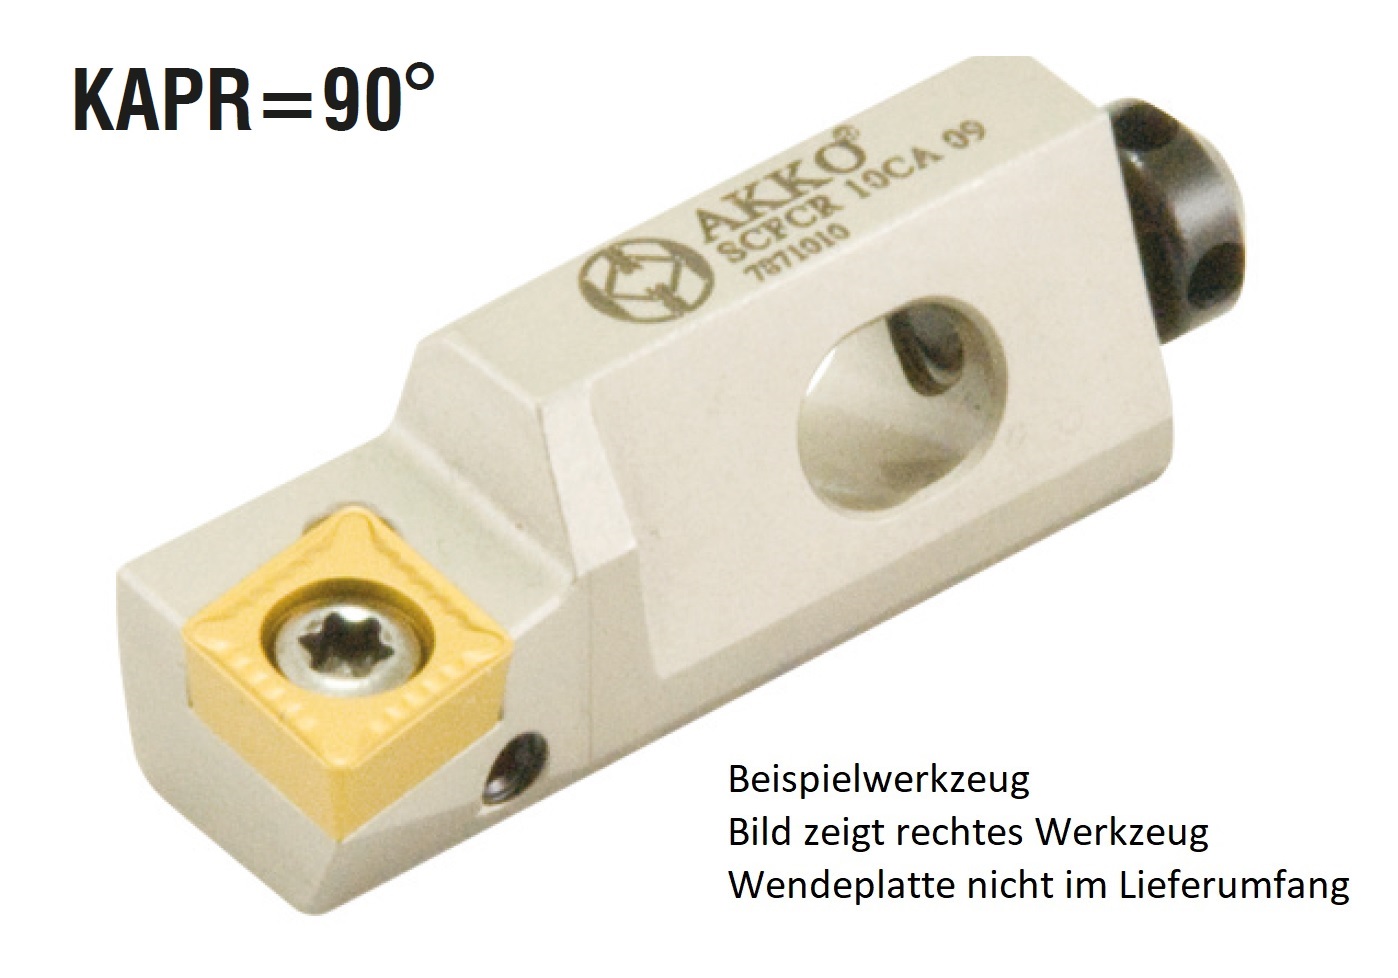 AKKO-Kurzdrehhalter für ISO-WSP CC.T 060204
rechts, 90° Anstellwinkel